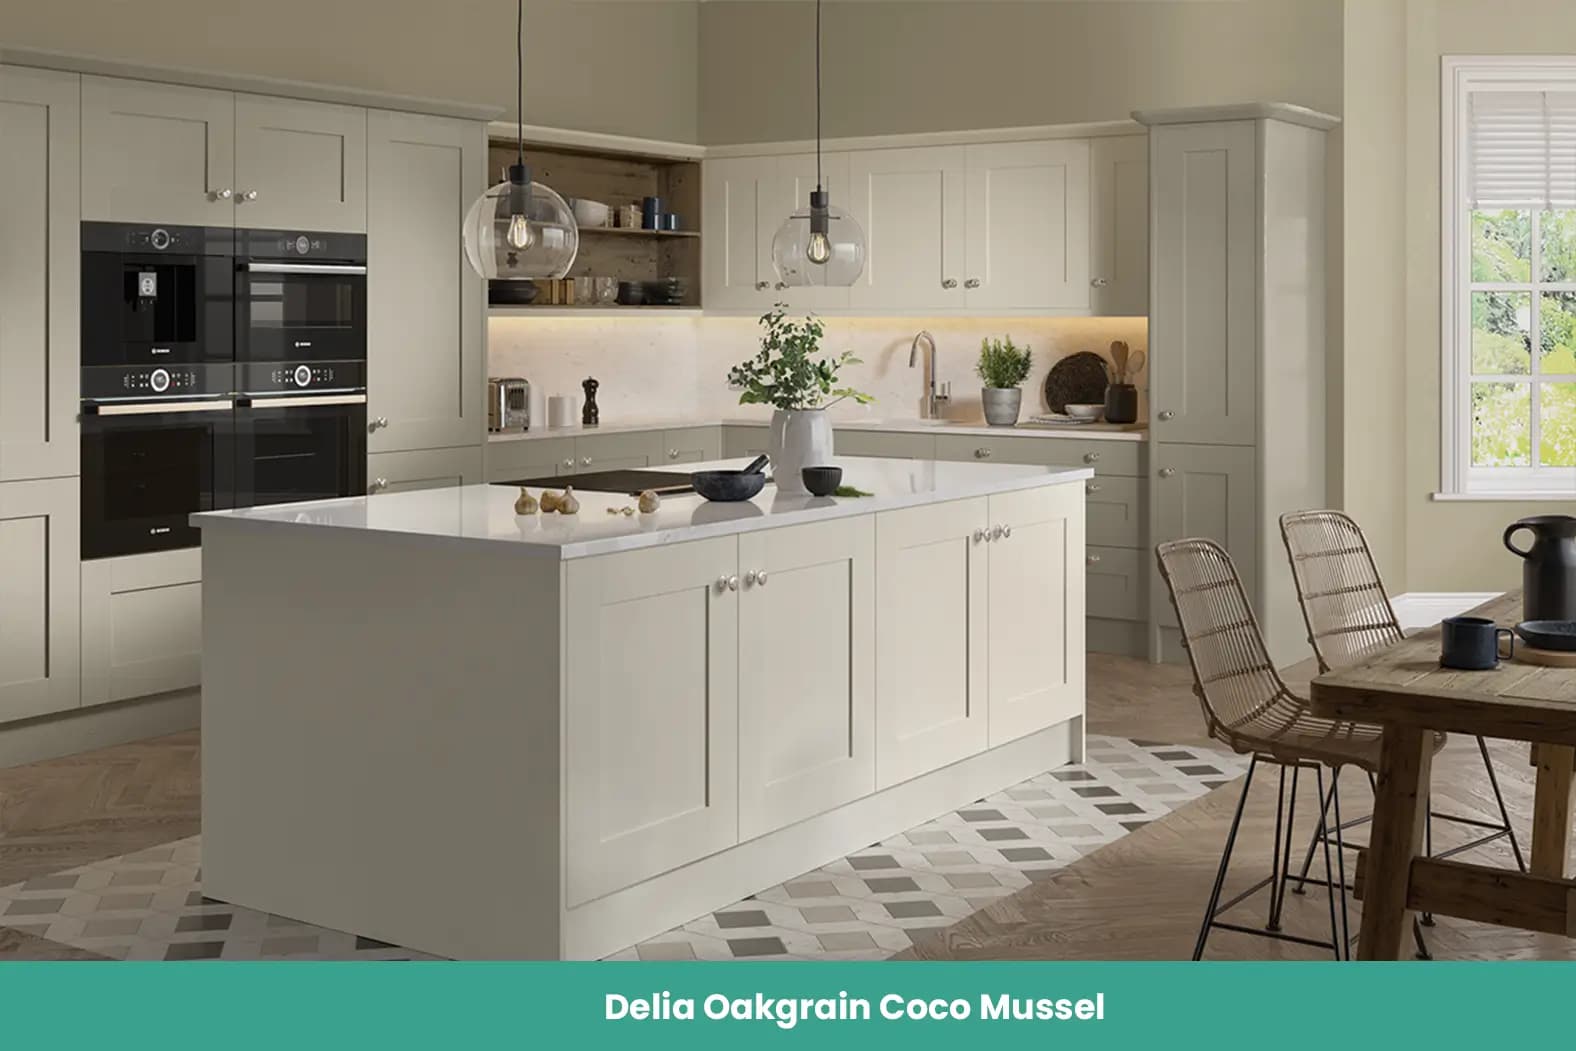 Delia Oakgrain Coco Mussel Kitchen